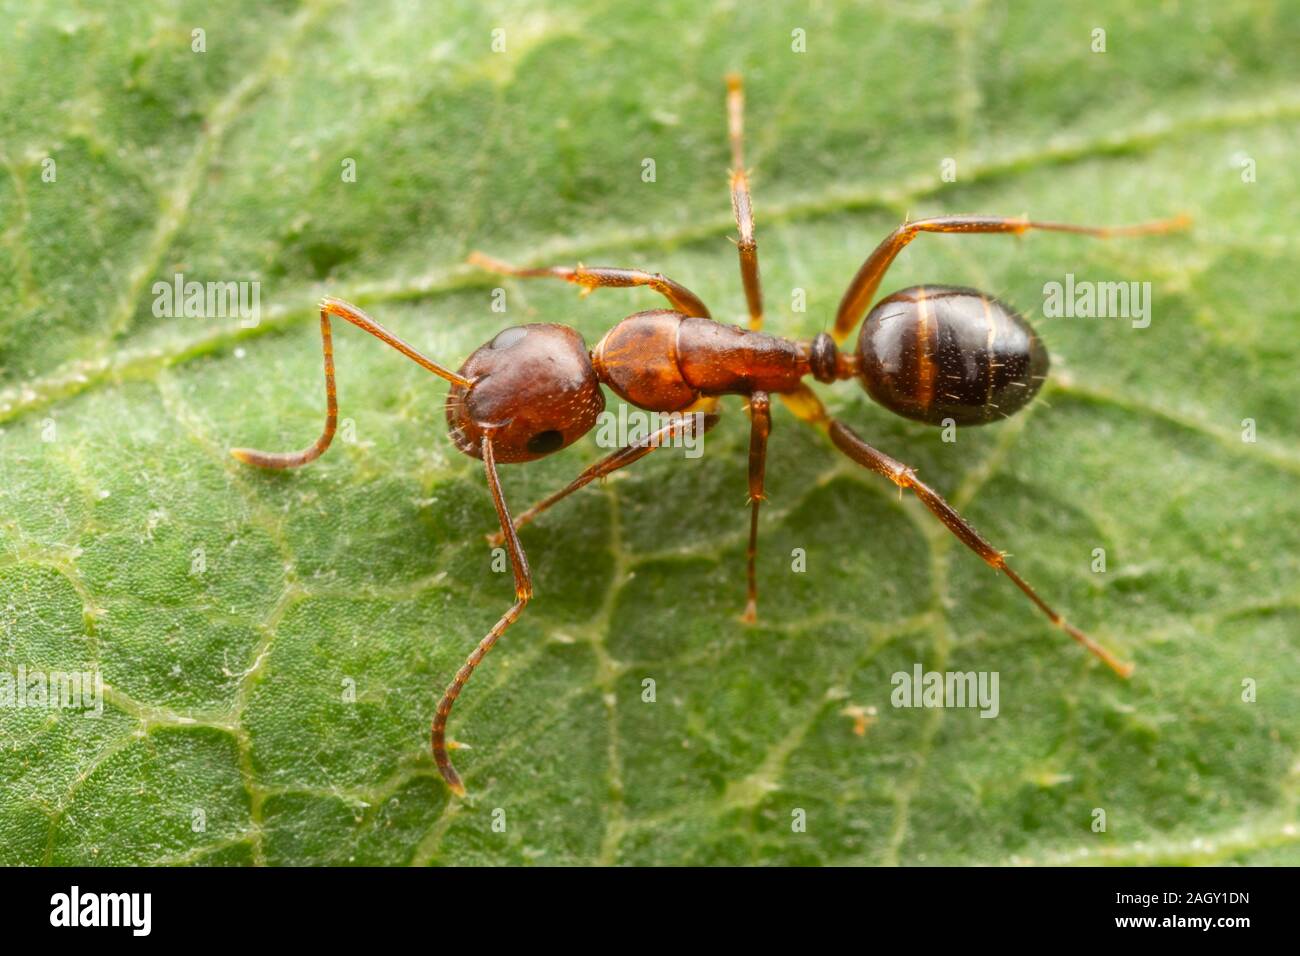 Un carpintero hormiga (siendo Camponotus subarbatus) se posa en una hoja. Foto de stock